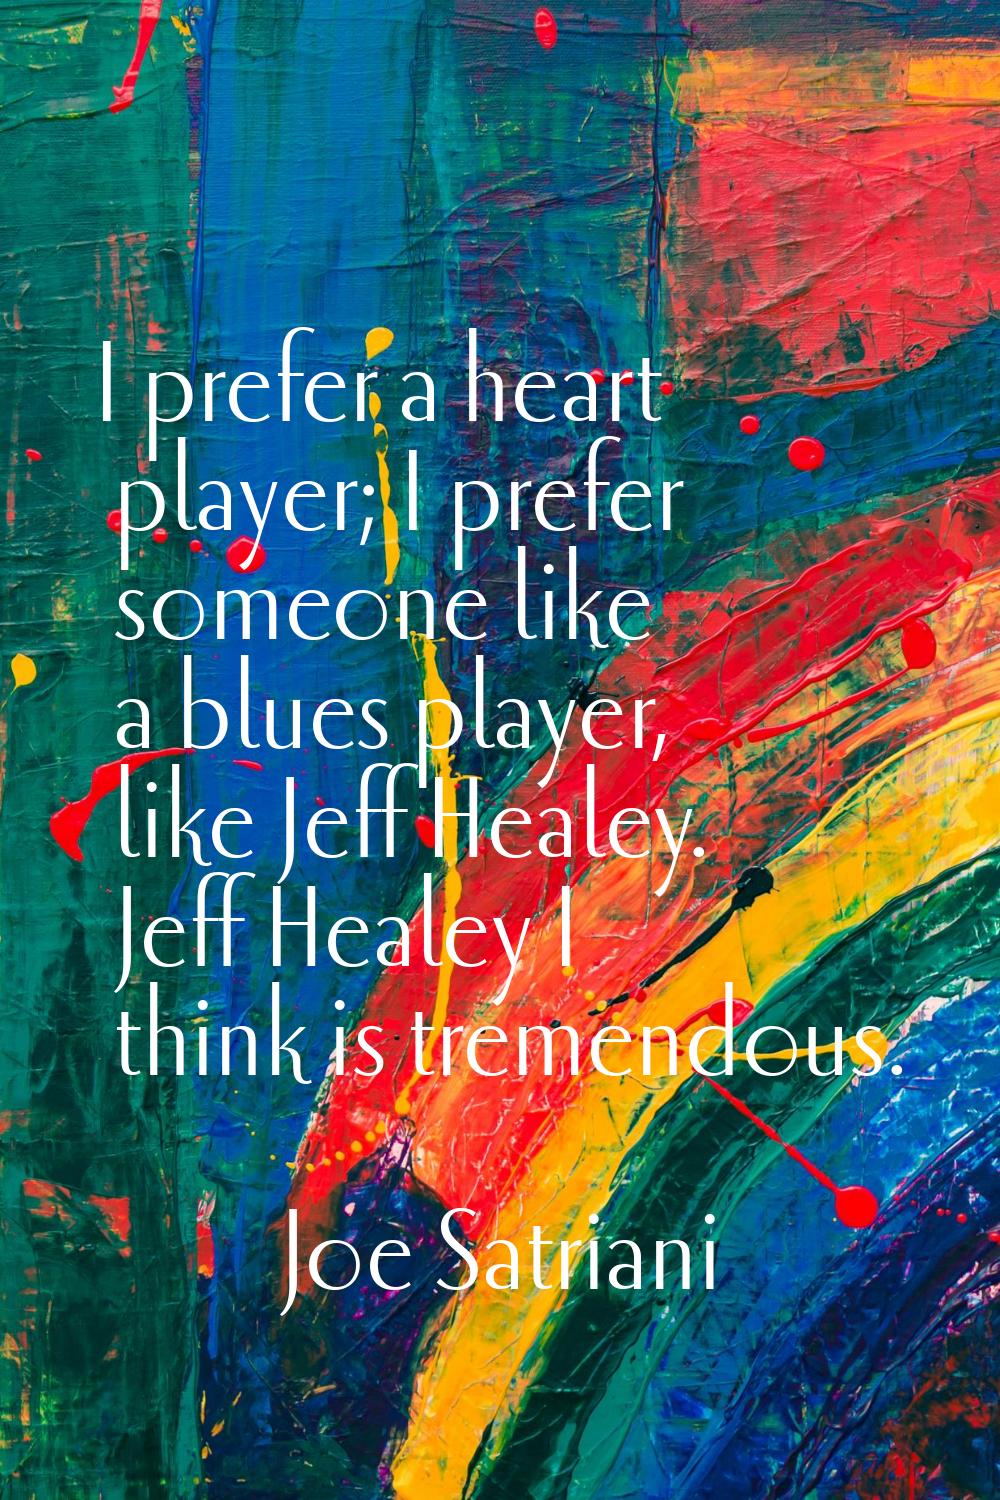 I prefer a heart player; I prefer someone like a blues player, like Jeff Healey. Jeff Healey I thin